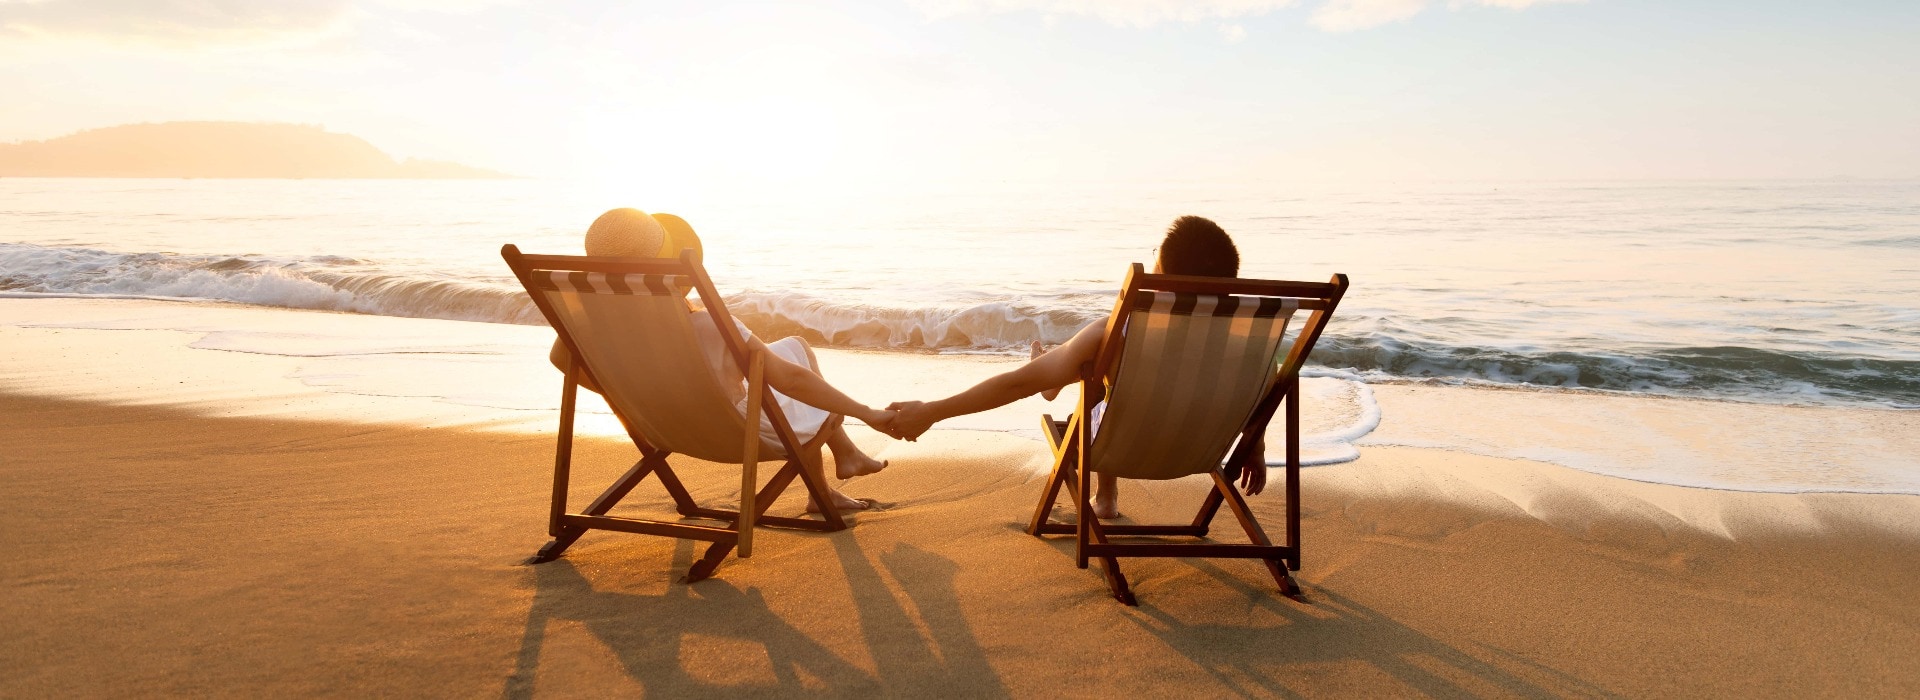 Junges Paar sonnt sich am Strand in Liegestühlen